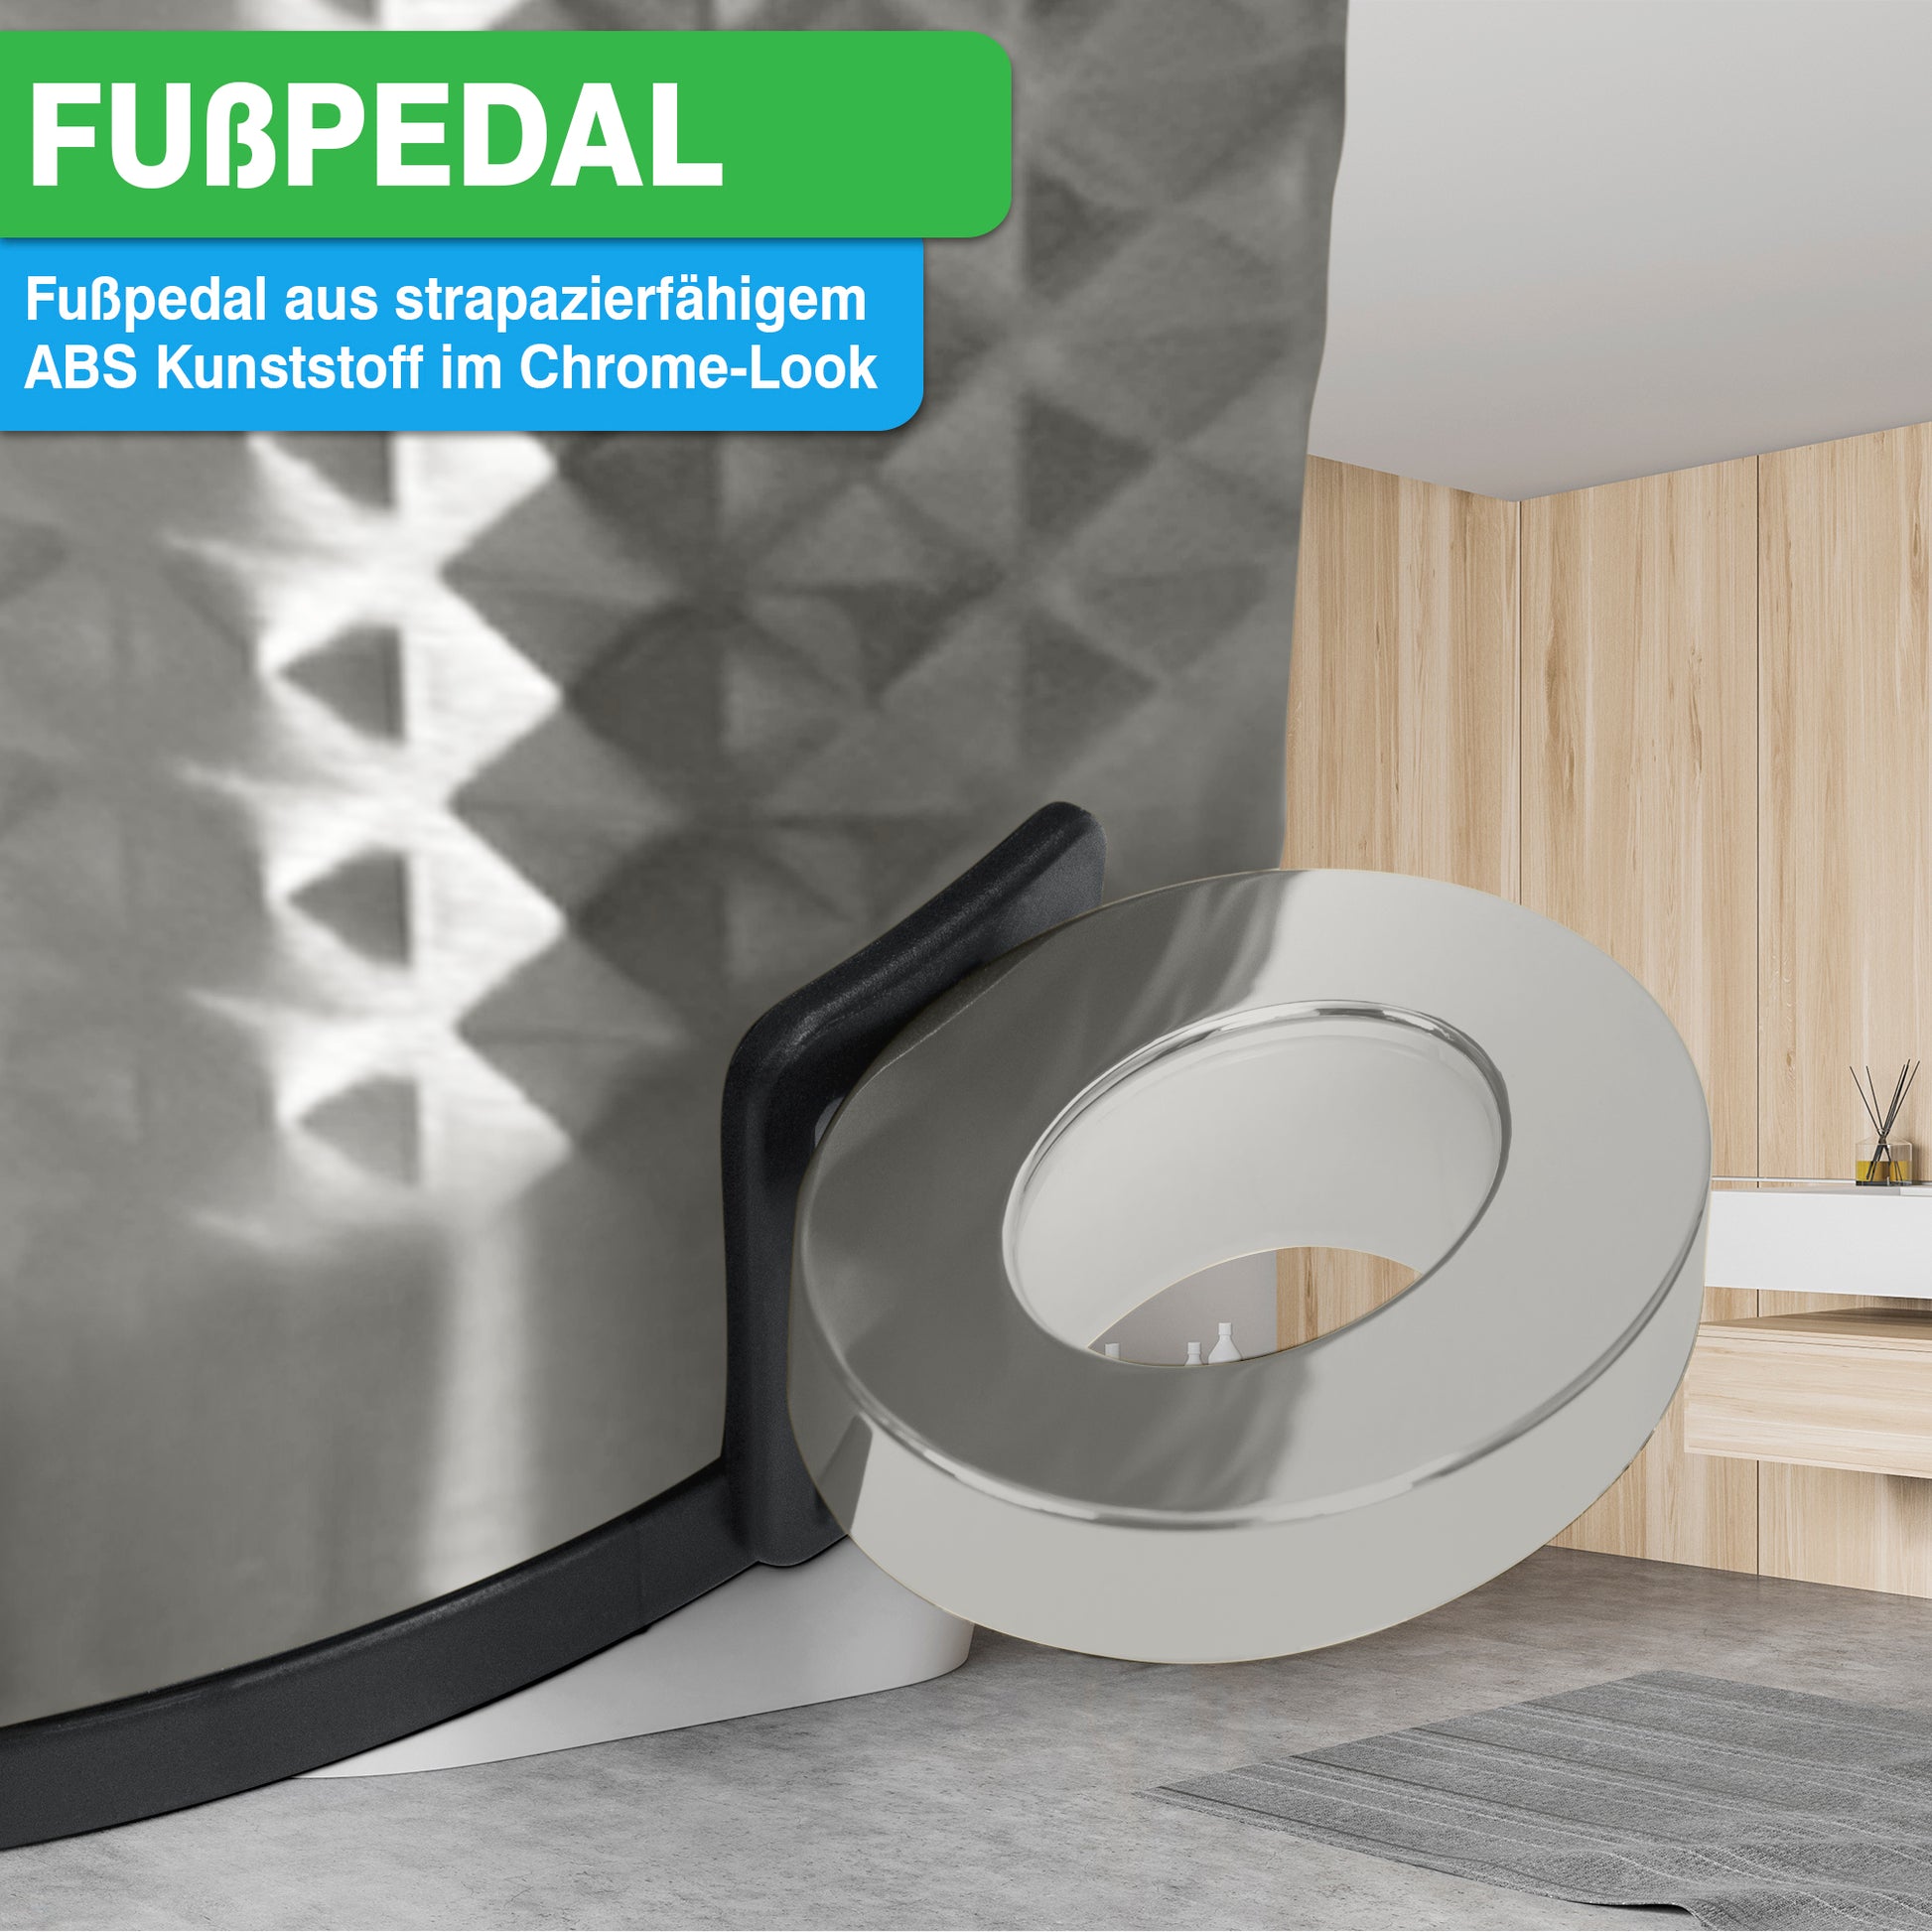 Moderner YourCasa® Edelstahl-Mülleimer Bad 5L mit Fußpedal in einem zeitgenössischen Badezimmer-Setting.